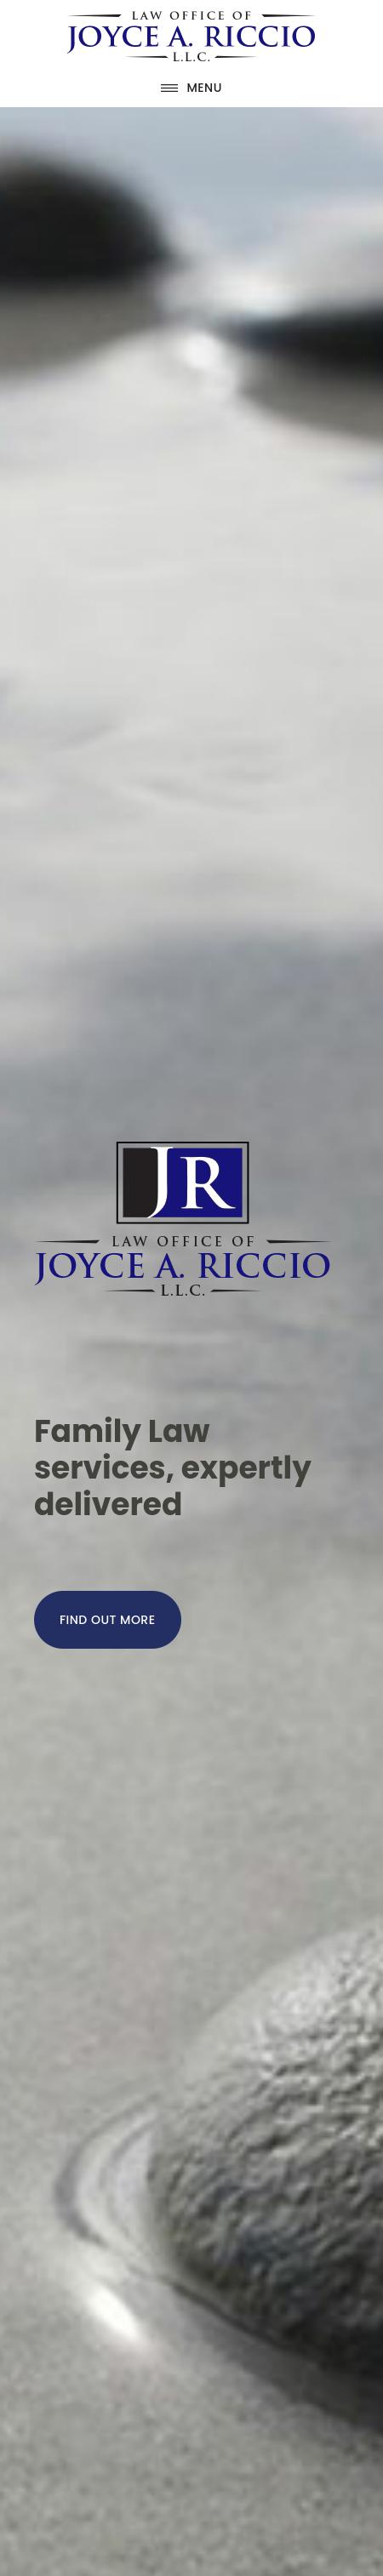 Riccio Joyce A - Fairfield CT Lawyers